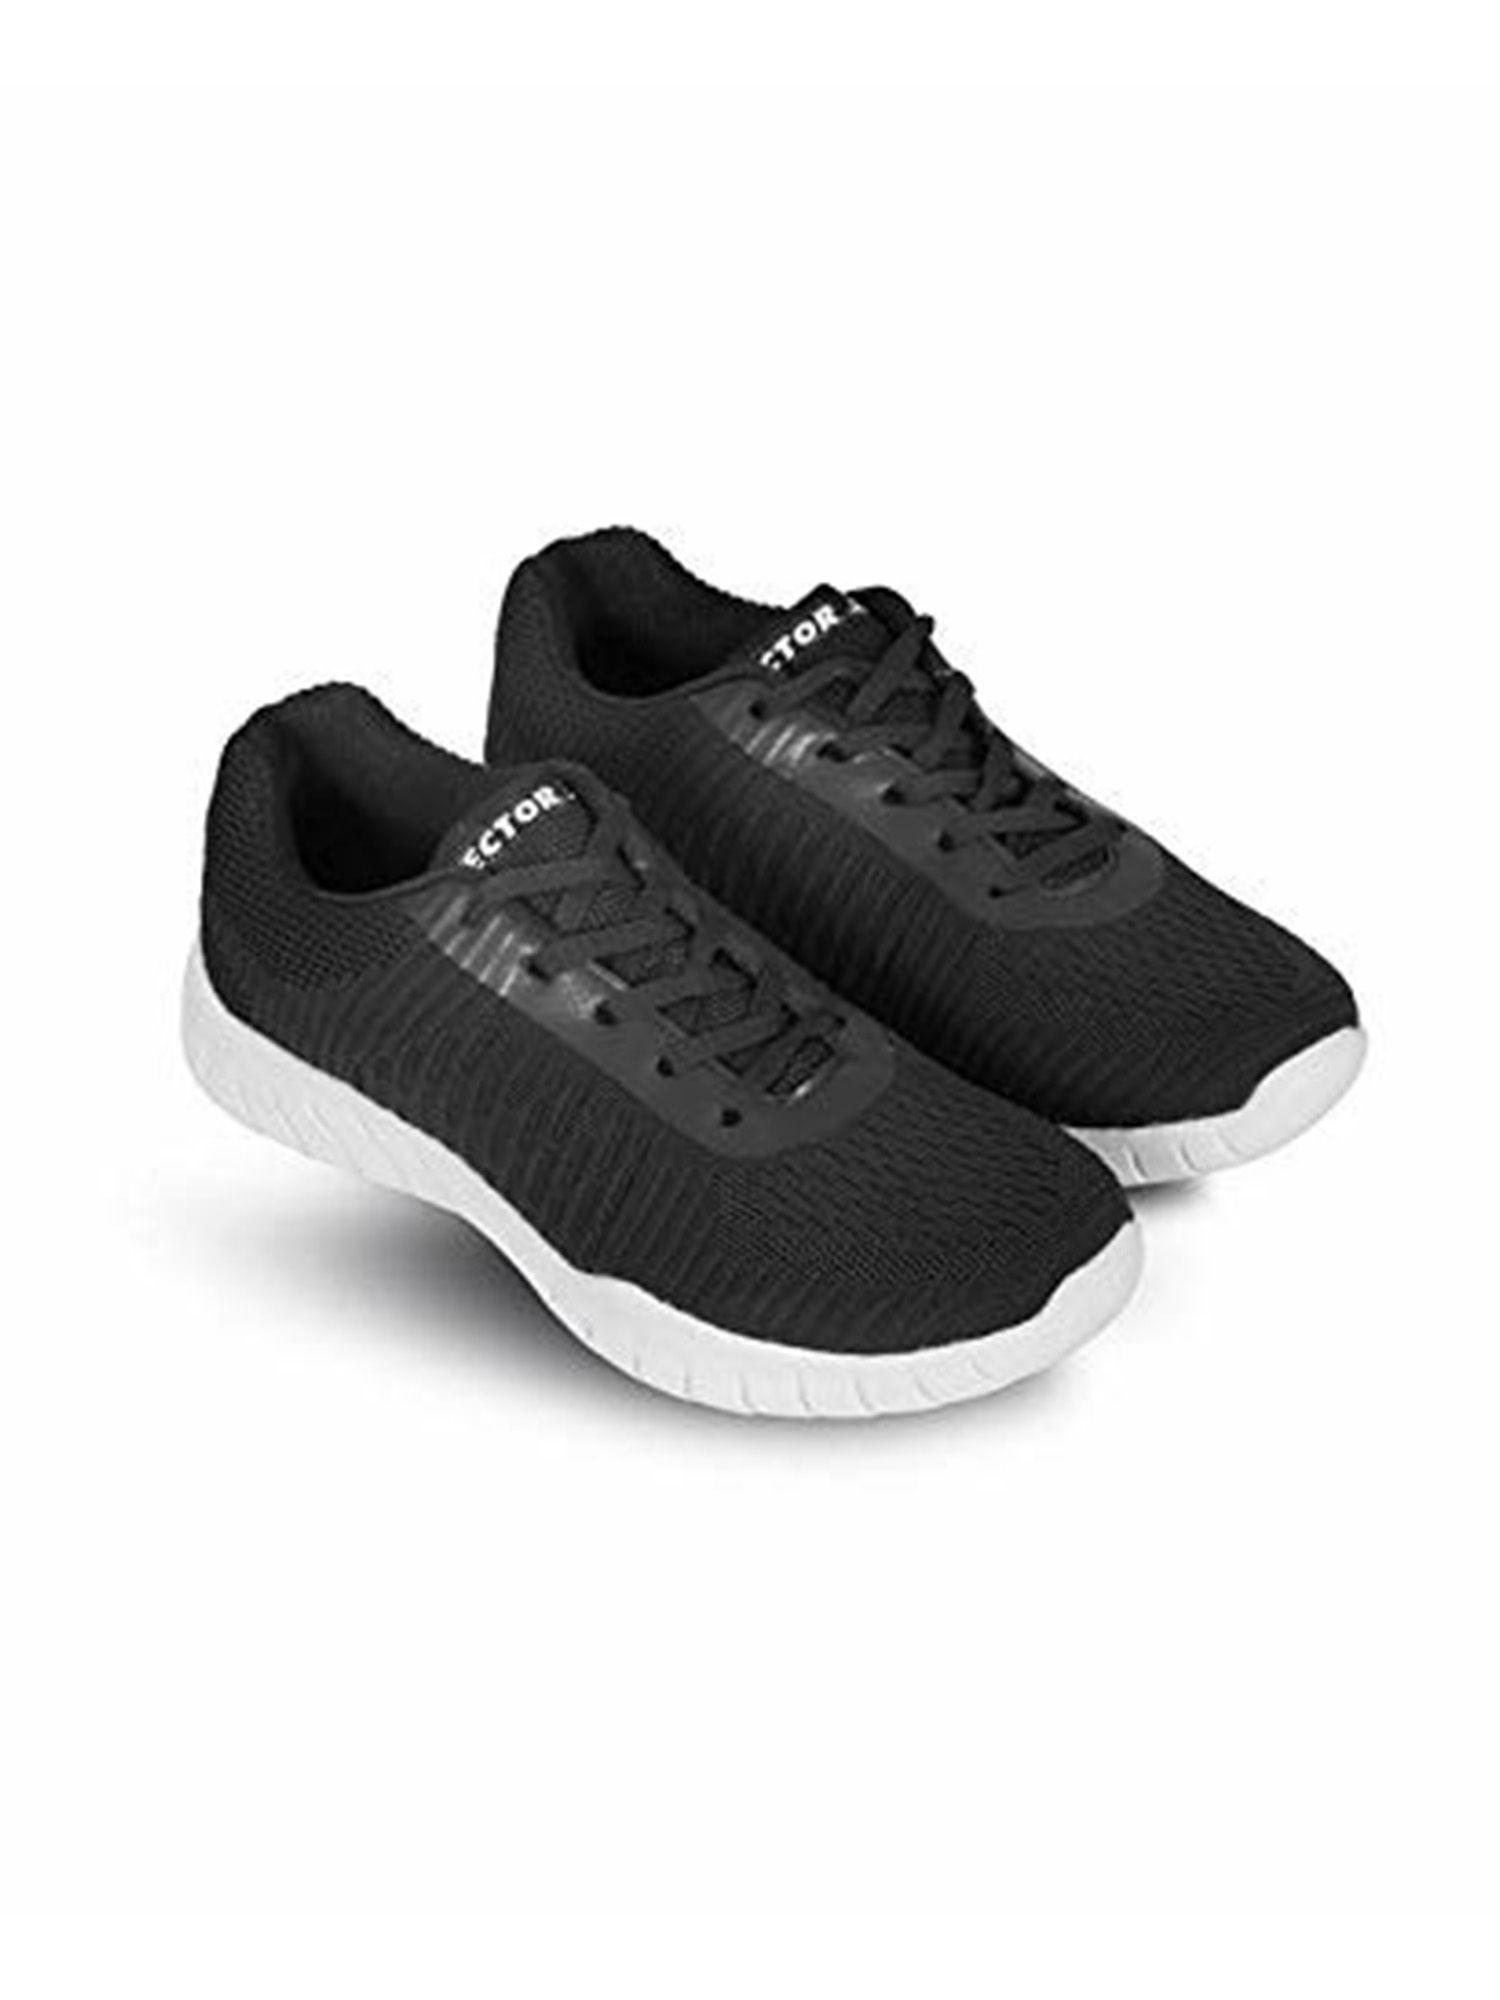 rs-7250 jogging shoes for men (black)